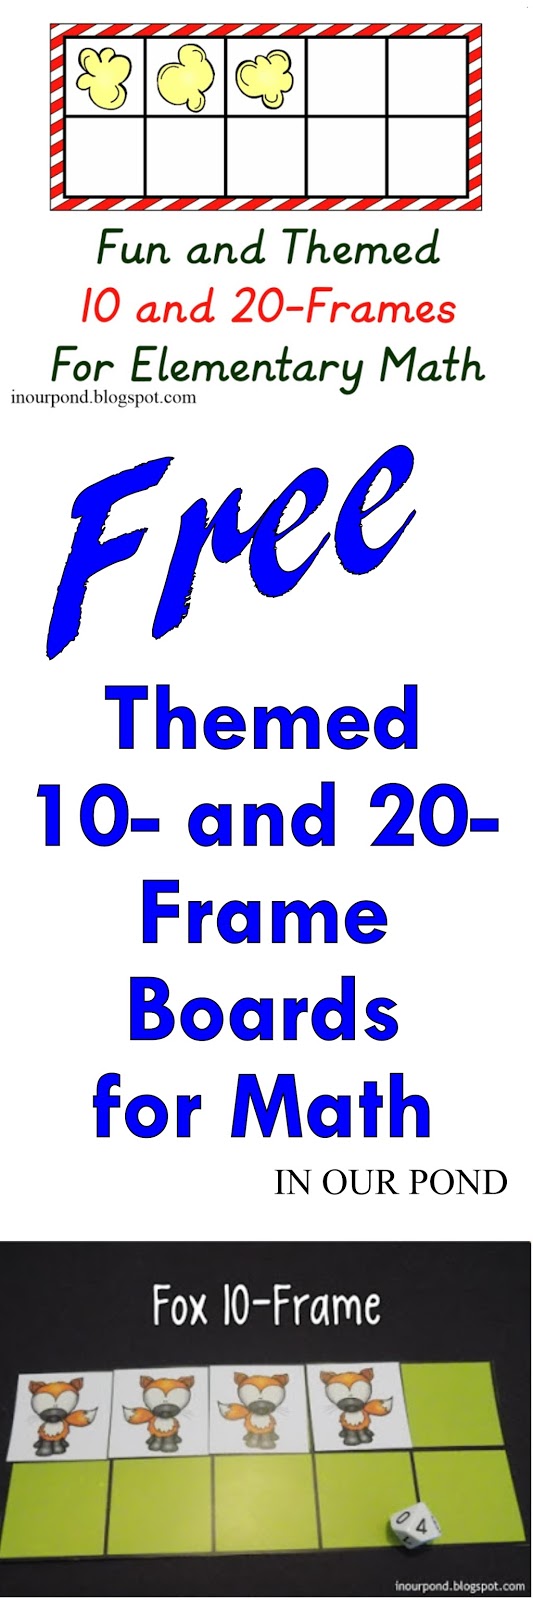 fun-themed-20-frames-math